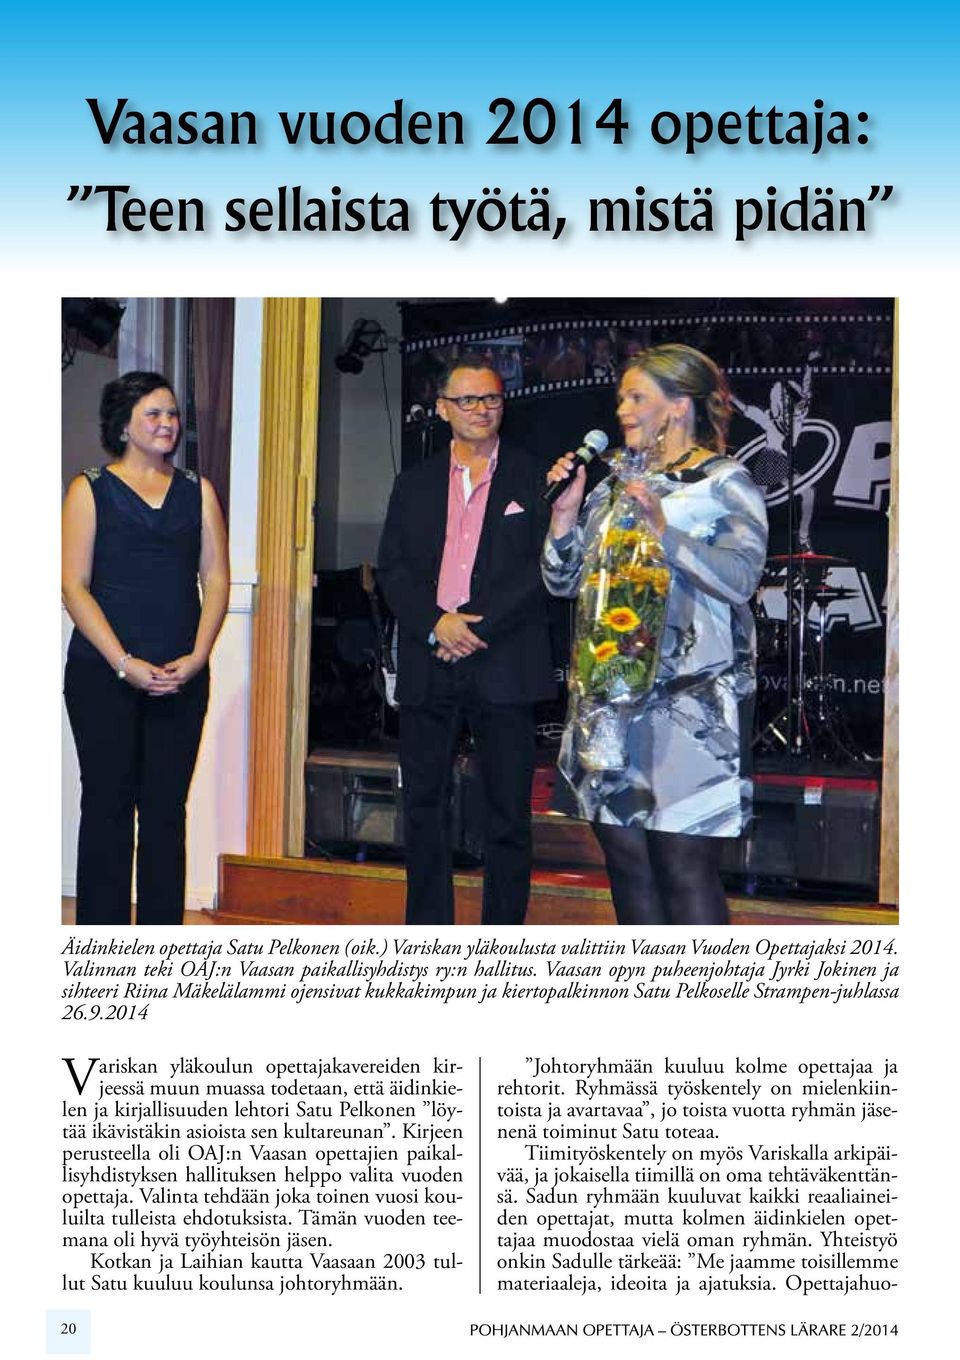 Vaasan opyn puheenjohtaja Jyrki Jokinen ja sihteeri Riina Mäkelälammi ojensivat kukkakimpun ja kiertopalkinnon Satu Pelkoselle Strampen-juhlassa 26.9.